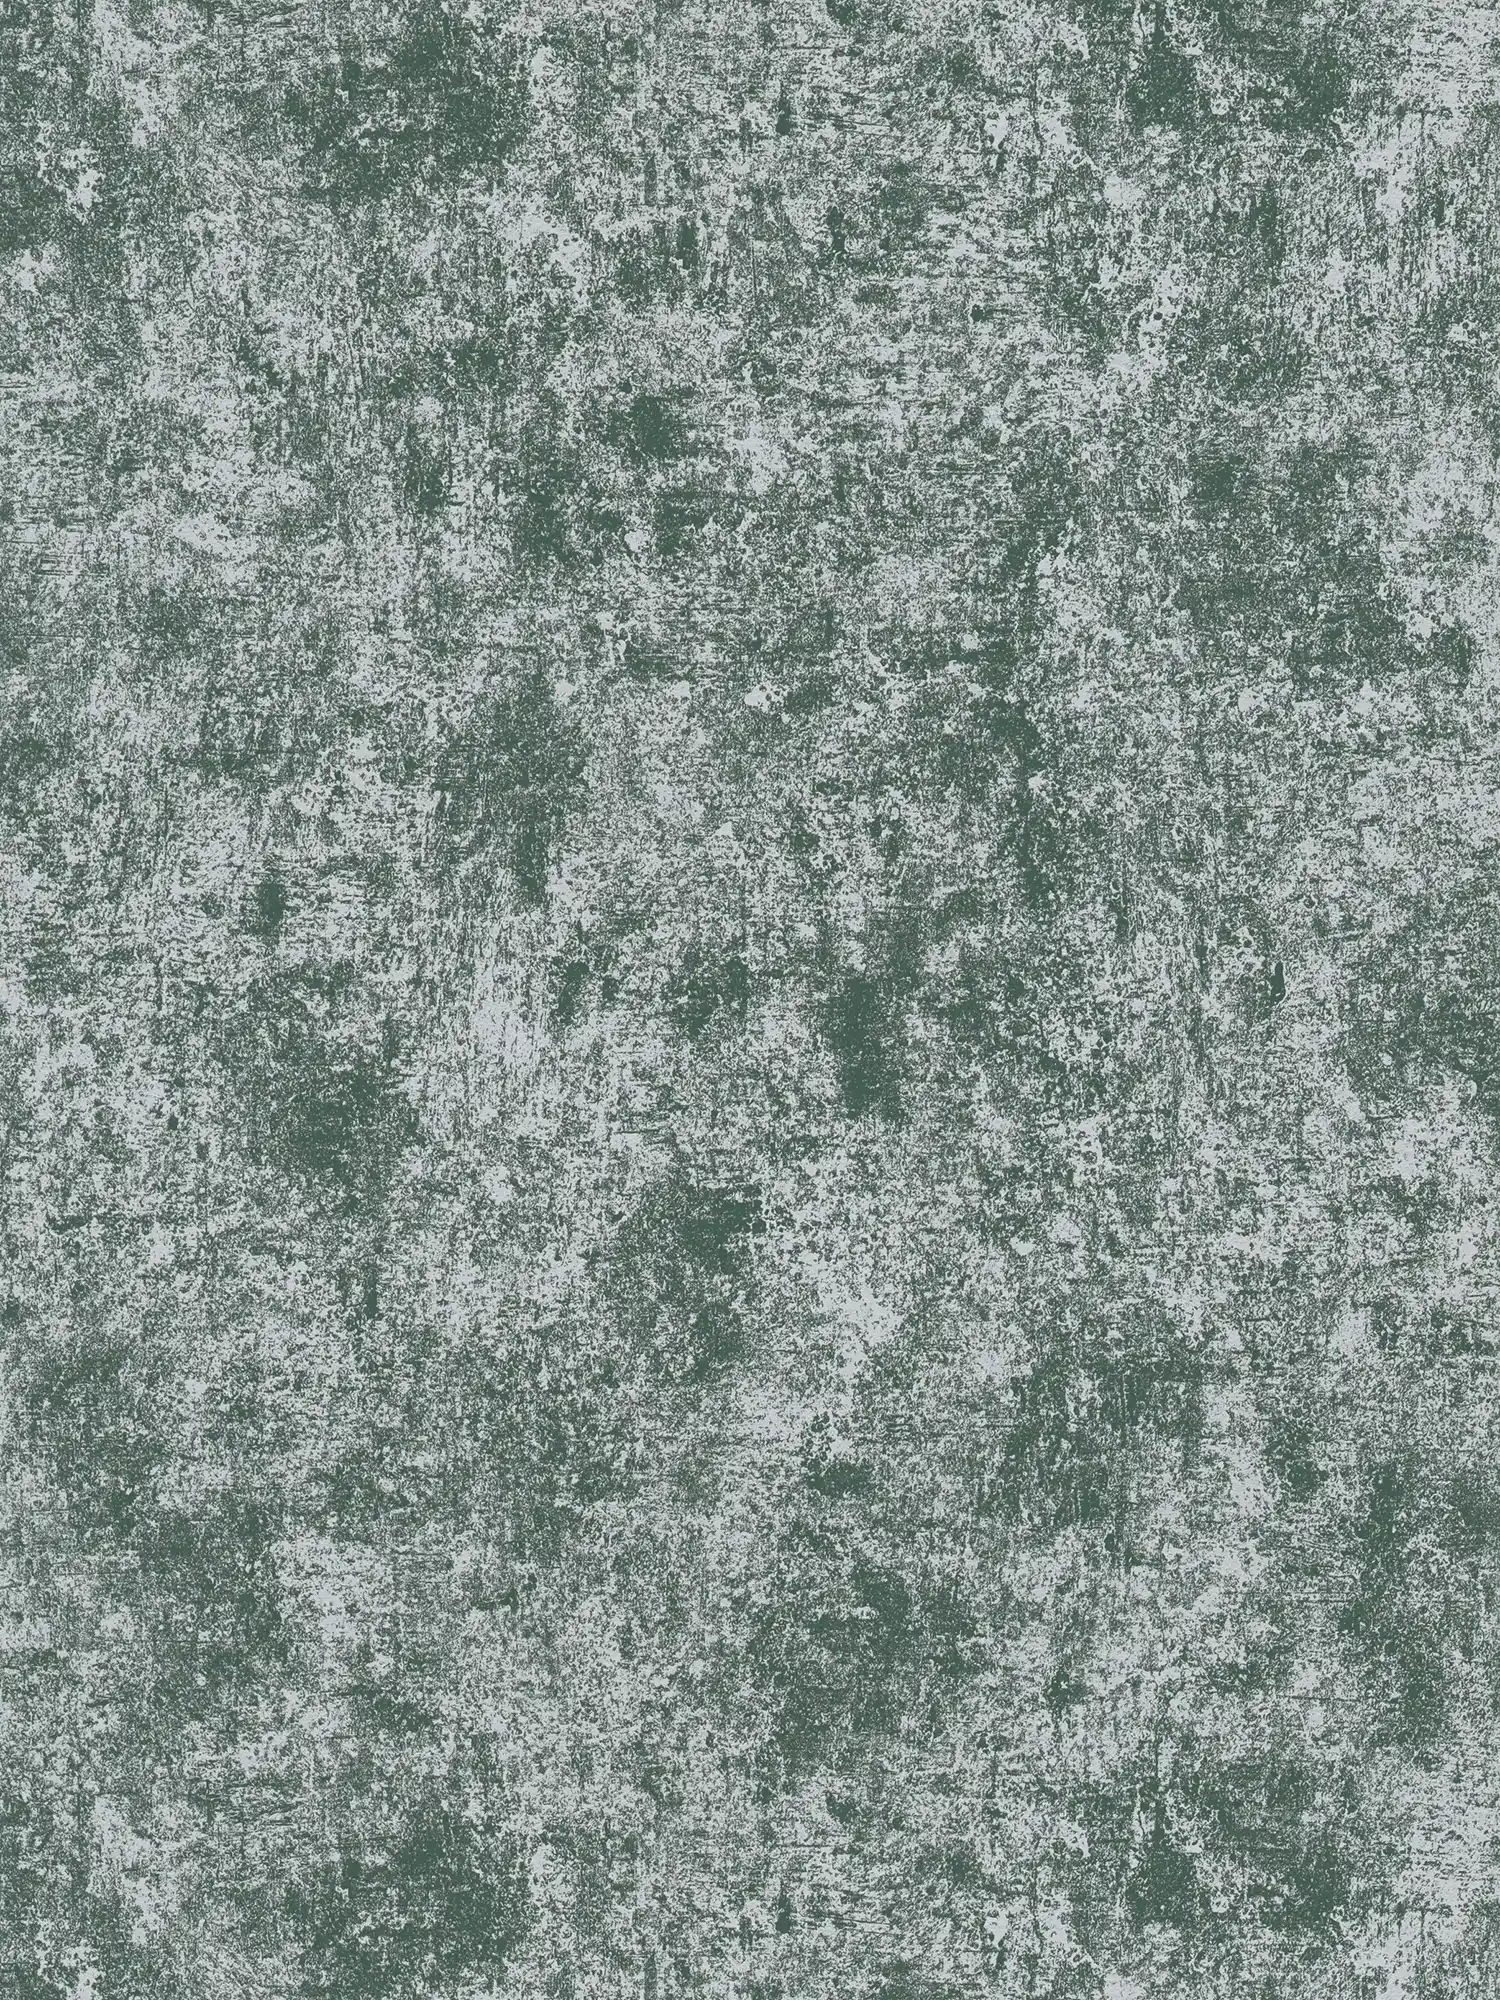 Tapete in Metalloptik mit Glanzeffekt glatt – Grün, Silber
